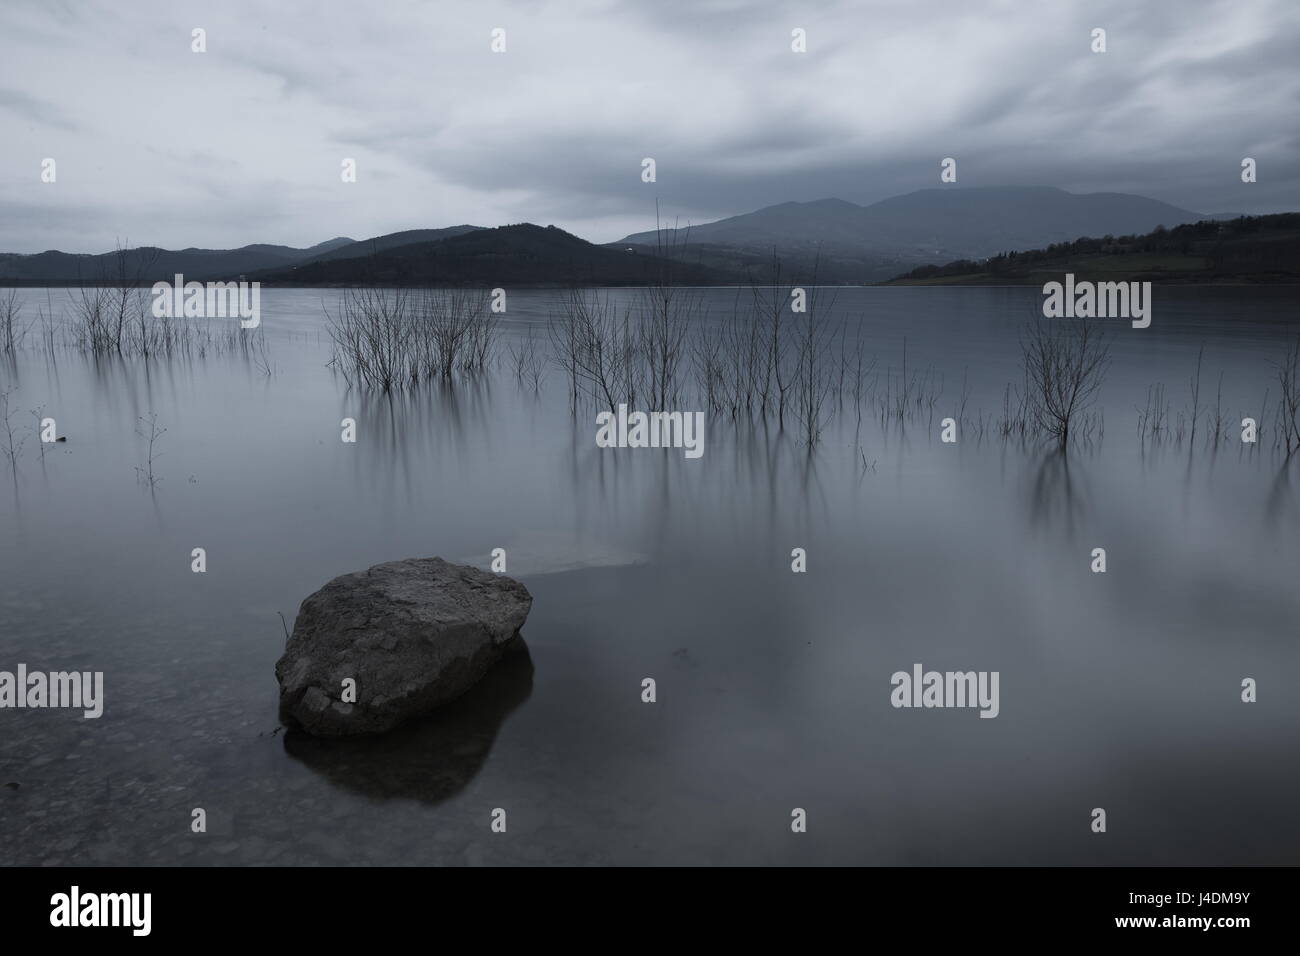 Una lunga esposizione foto di una grande roccia in un lago, sotto un cielo nuvoloso Foto Stock